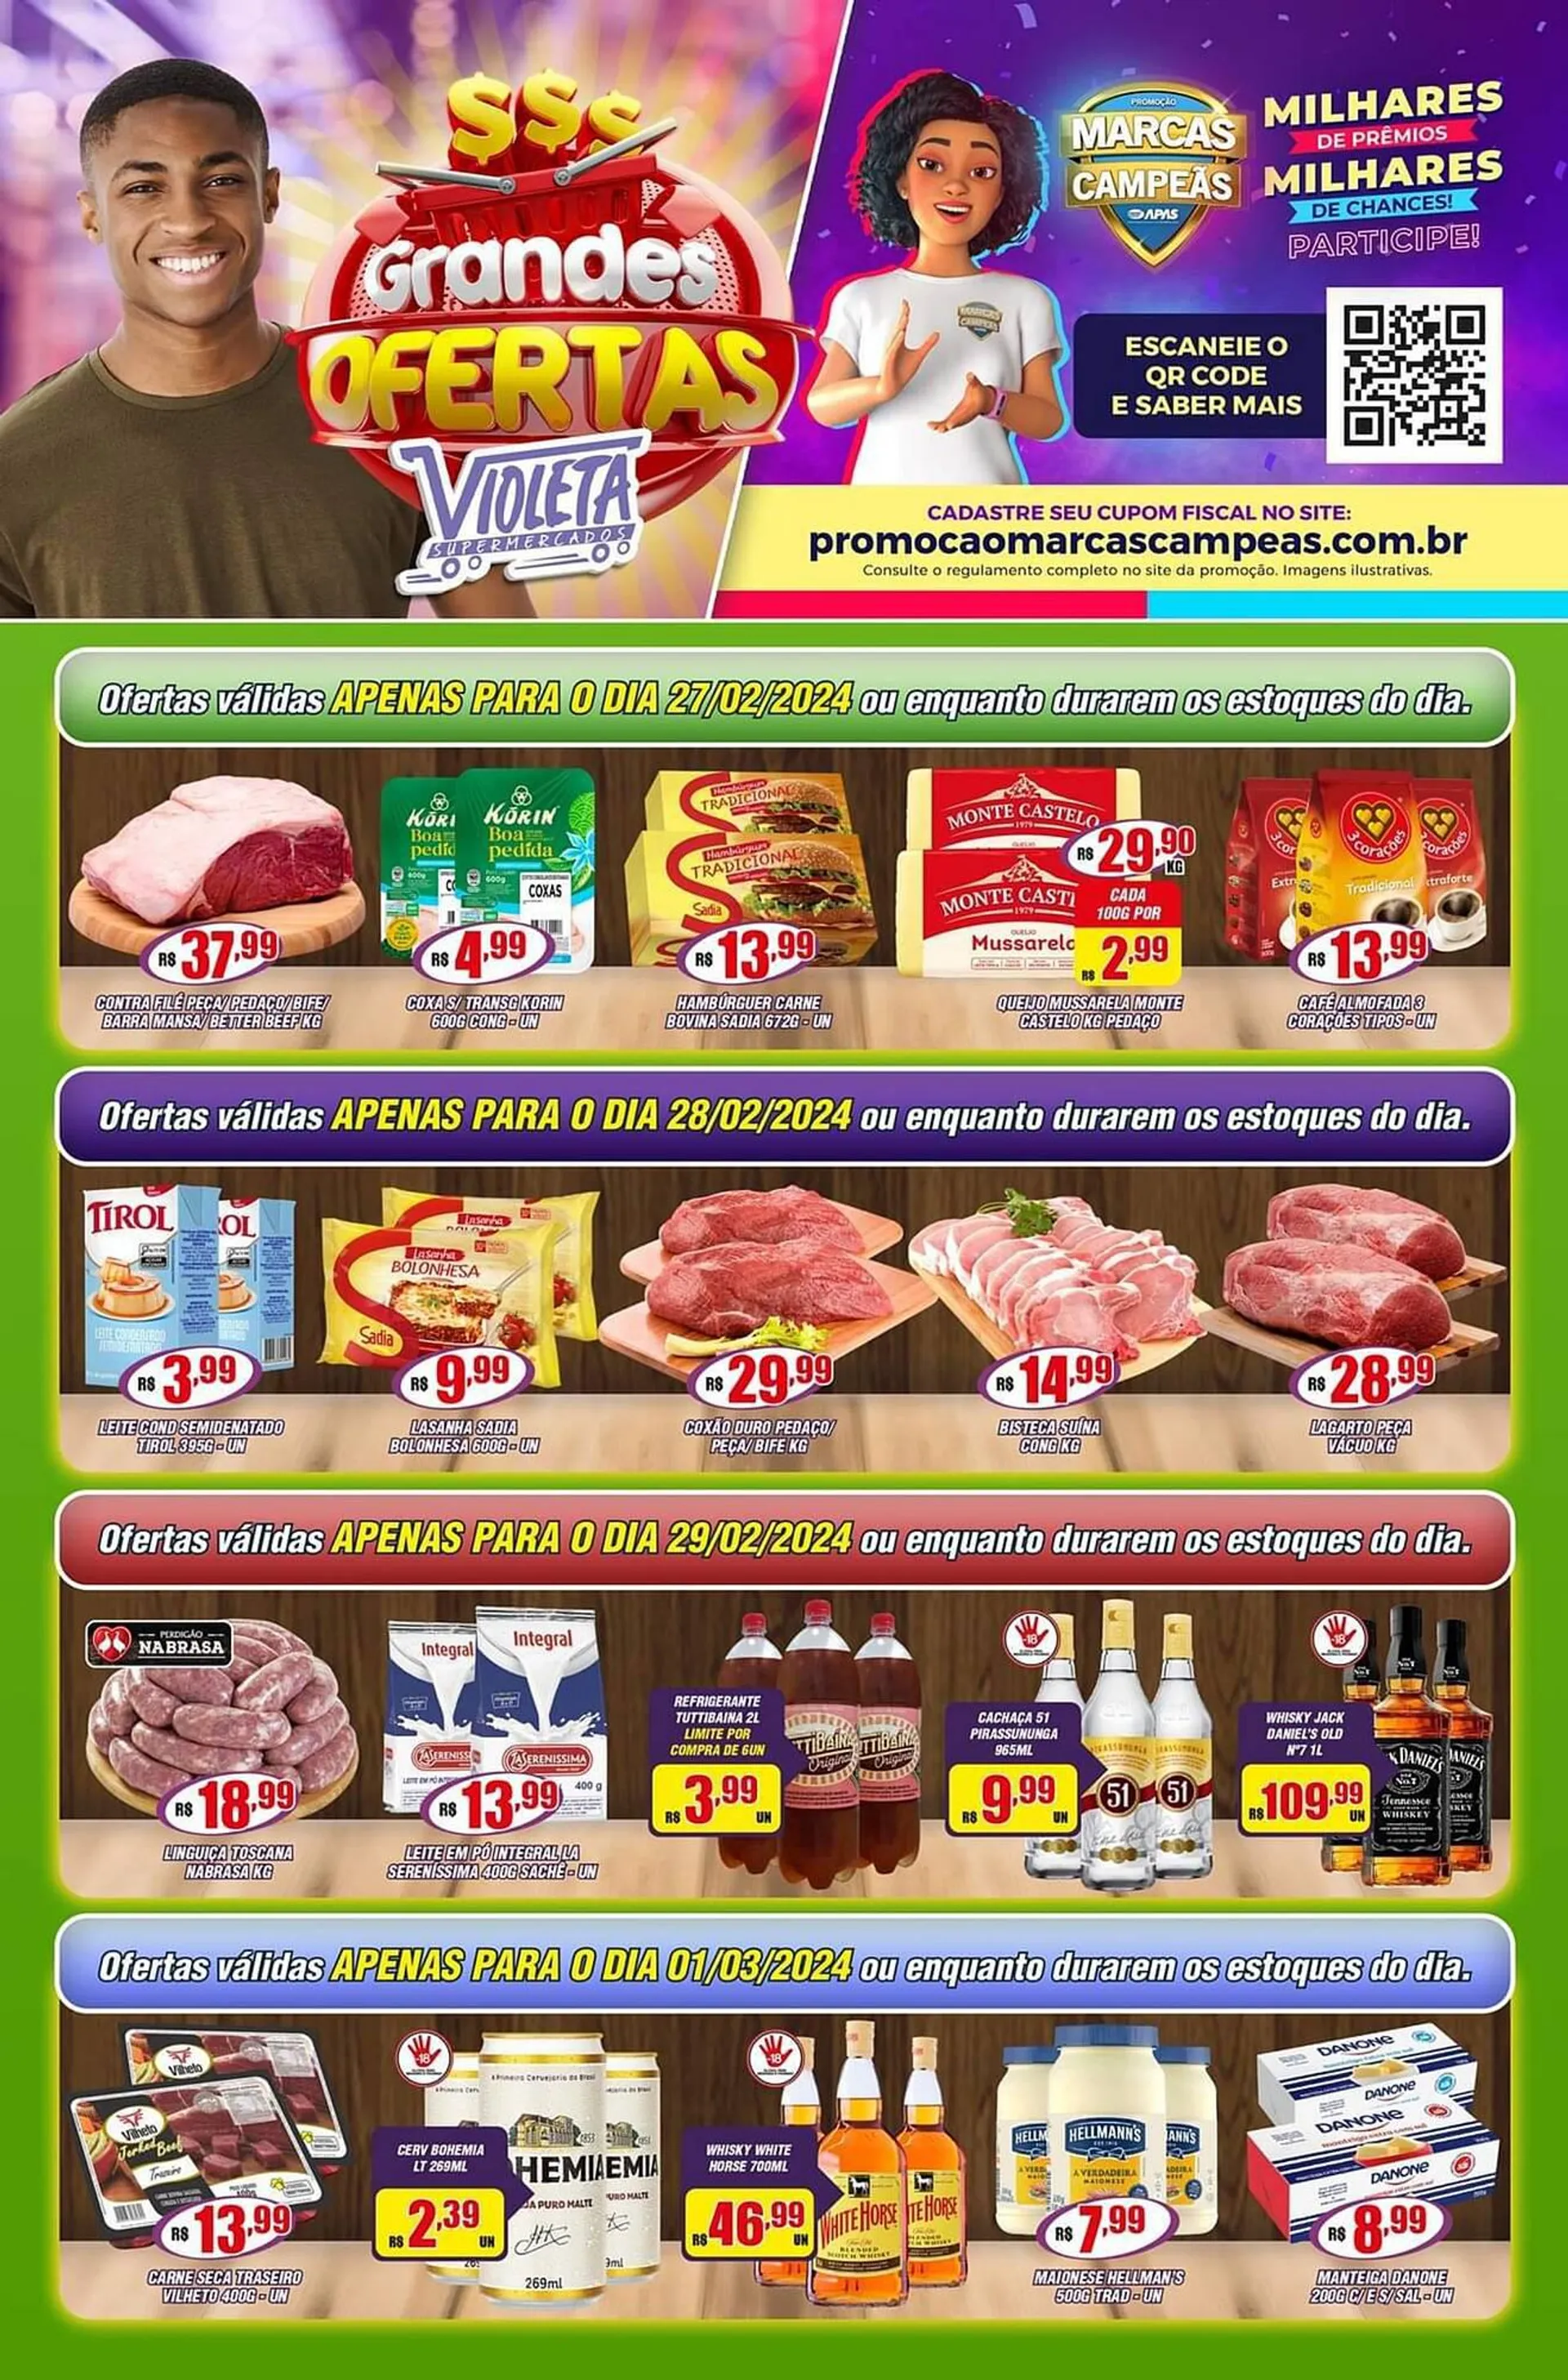 Encarte de Catálogo Violeta Supermercados 26 de fevereiro até 1 de março 2024 - Pagina 